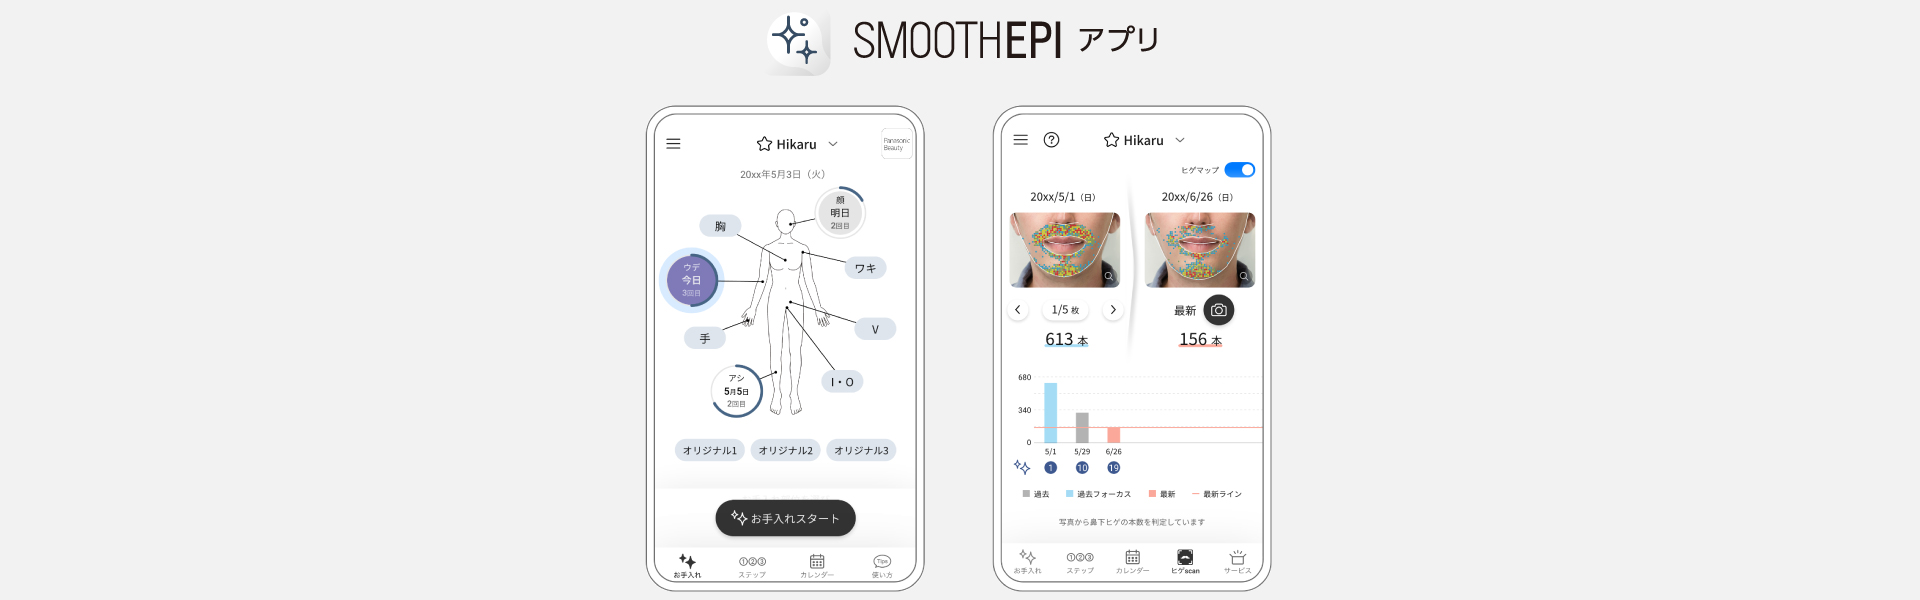 SMOOTHEPIアプリ画面イメージ